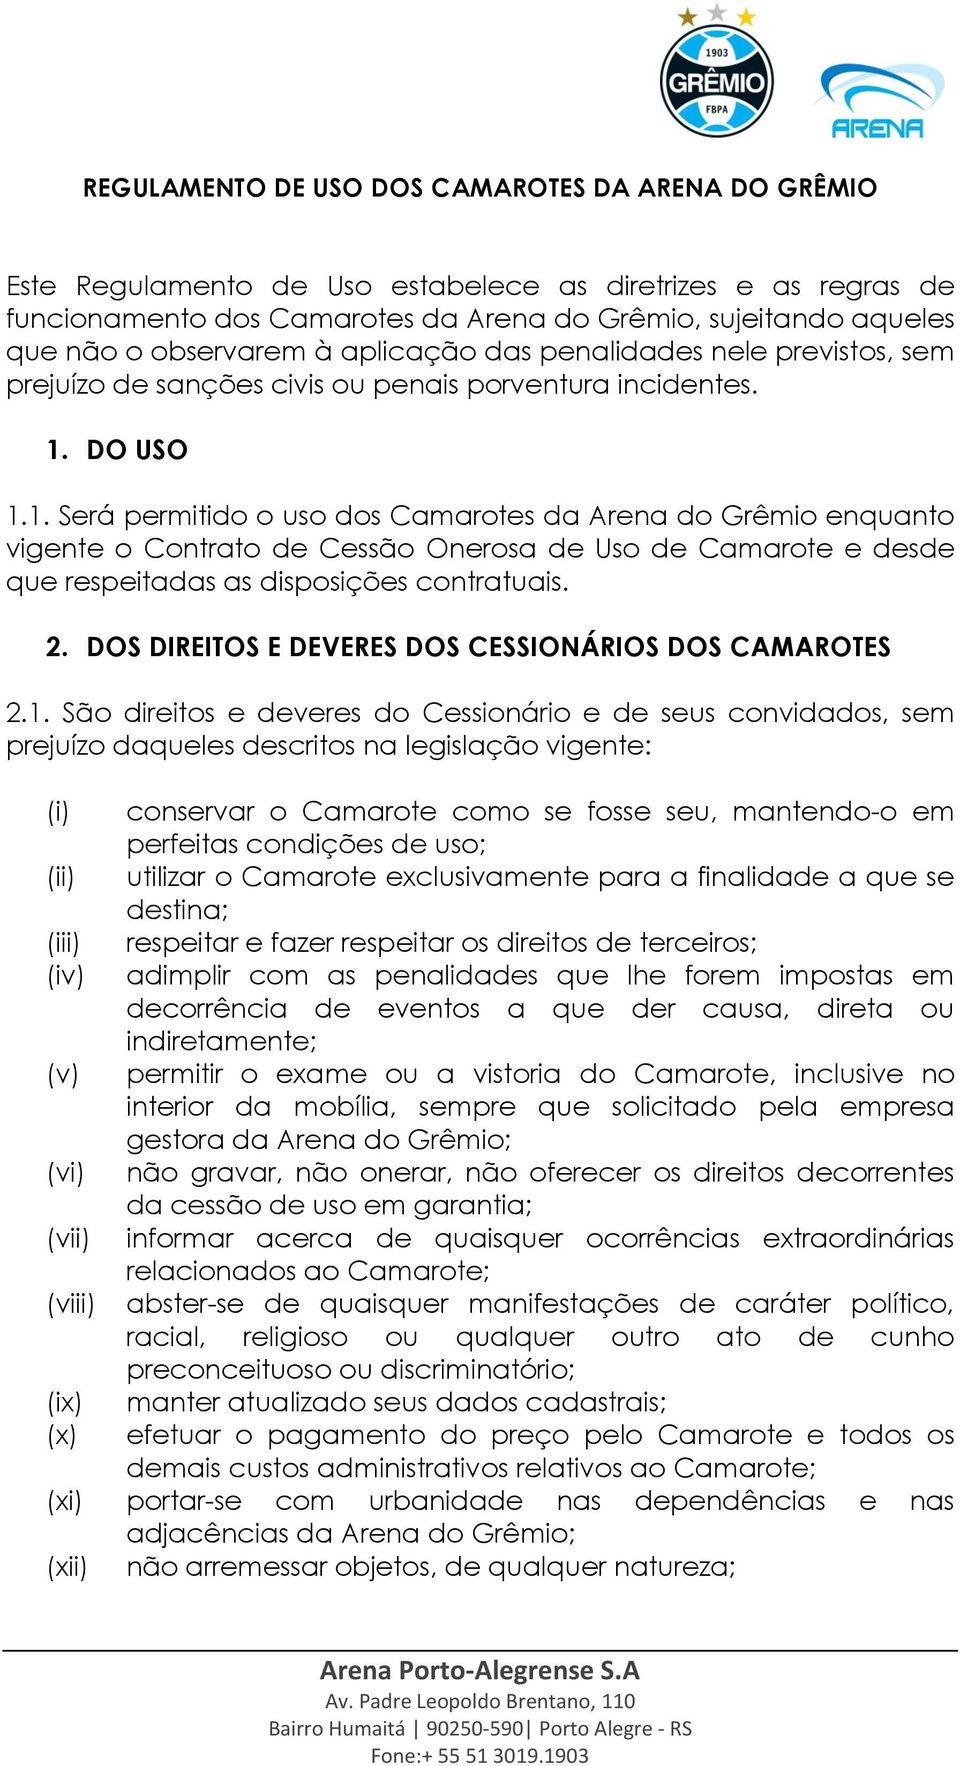 DO USO 1.1. Será permitido o uso dos Camarotes da Arena do Grêmio enquanto vigente o Contrato de Cessão Onerosa de Uso de Camarote e desde que respeitadas as disposições contratuais. 2.